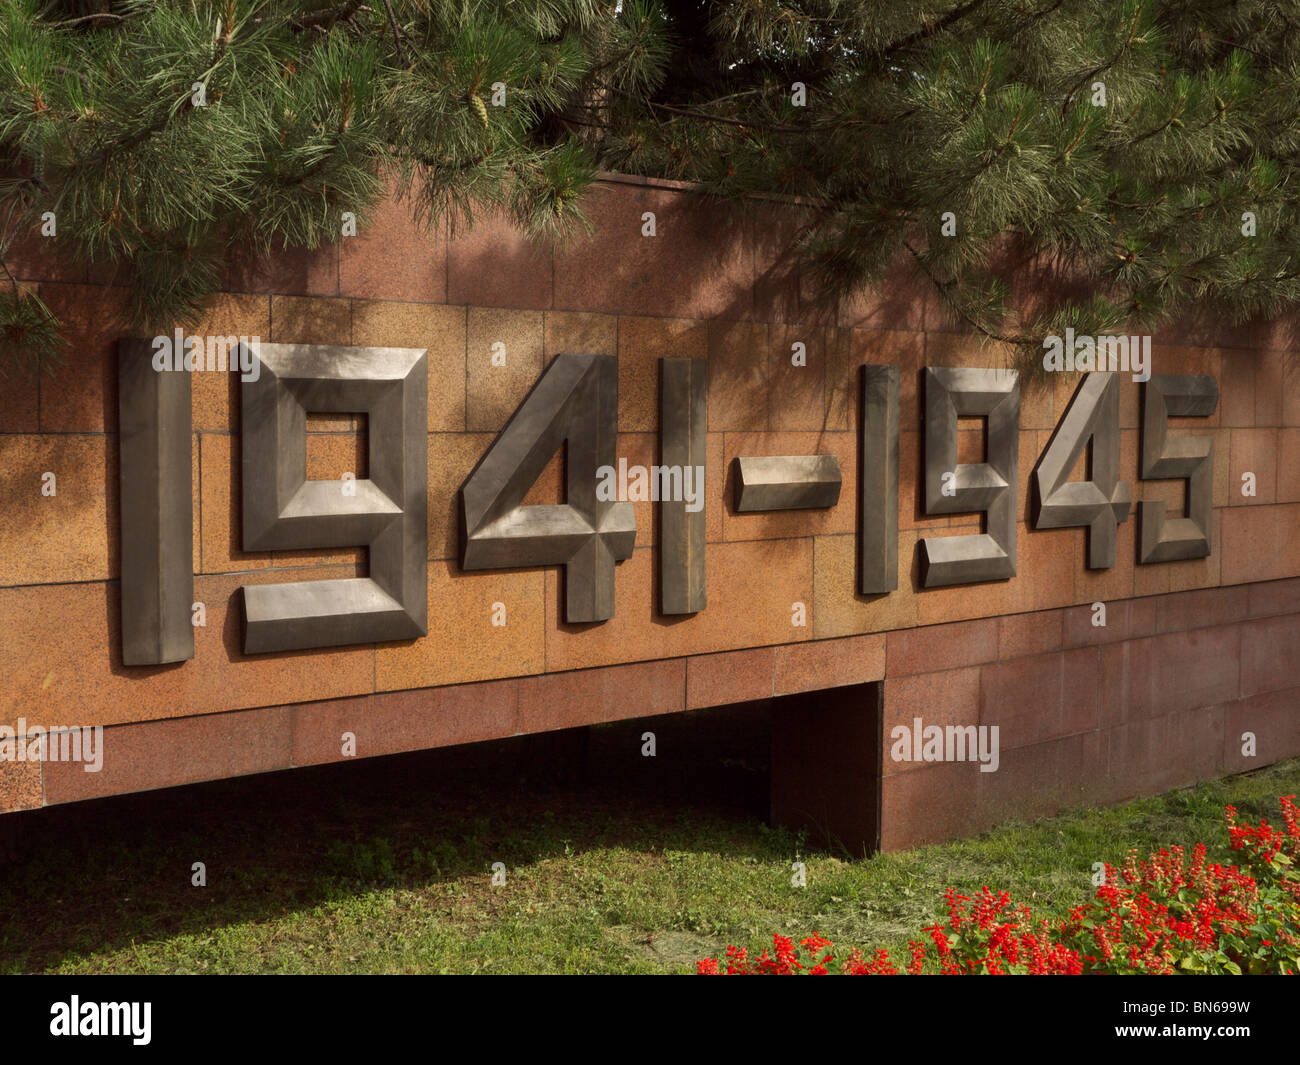 The 28 Panfilov Heroes Memorial Park and memorial in Almaty. Stock Photo